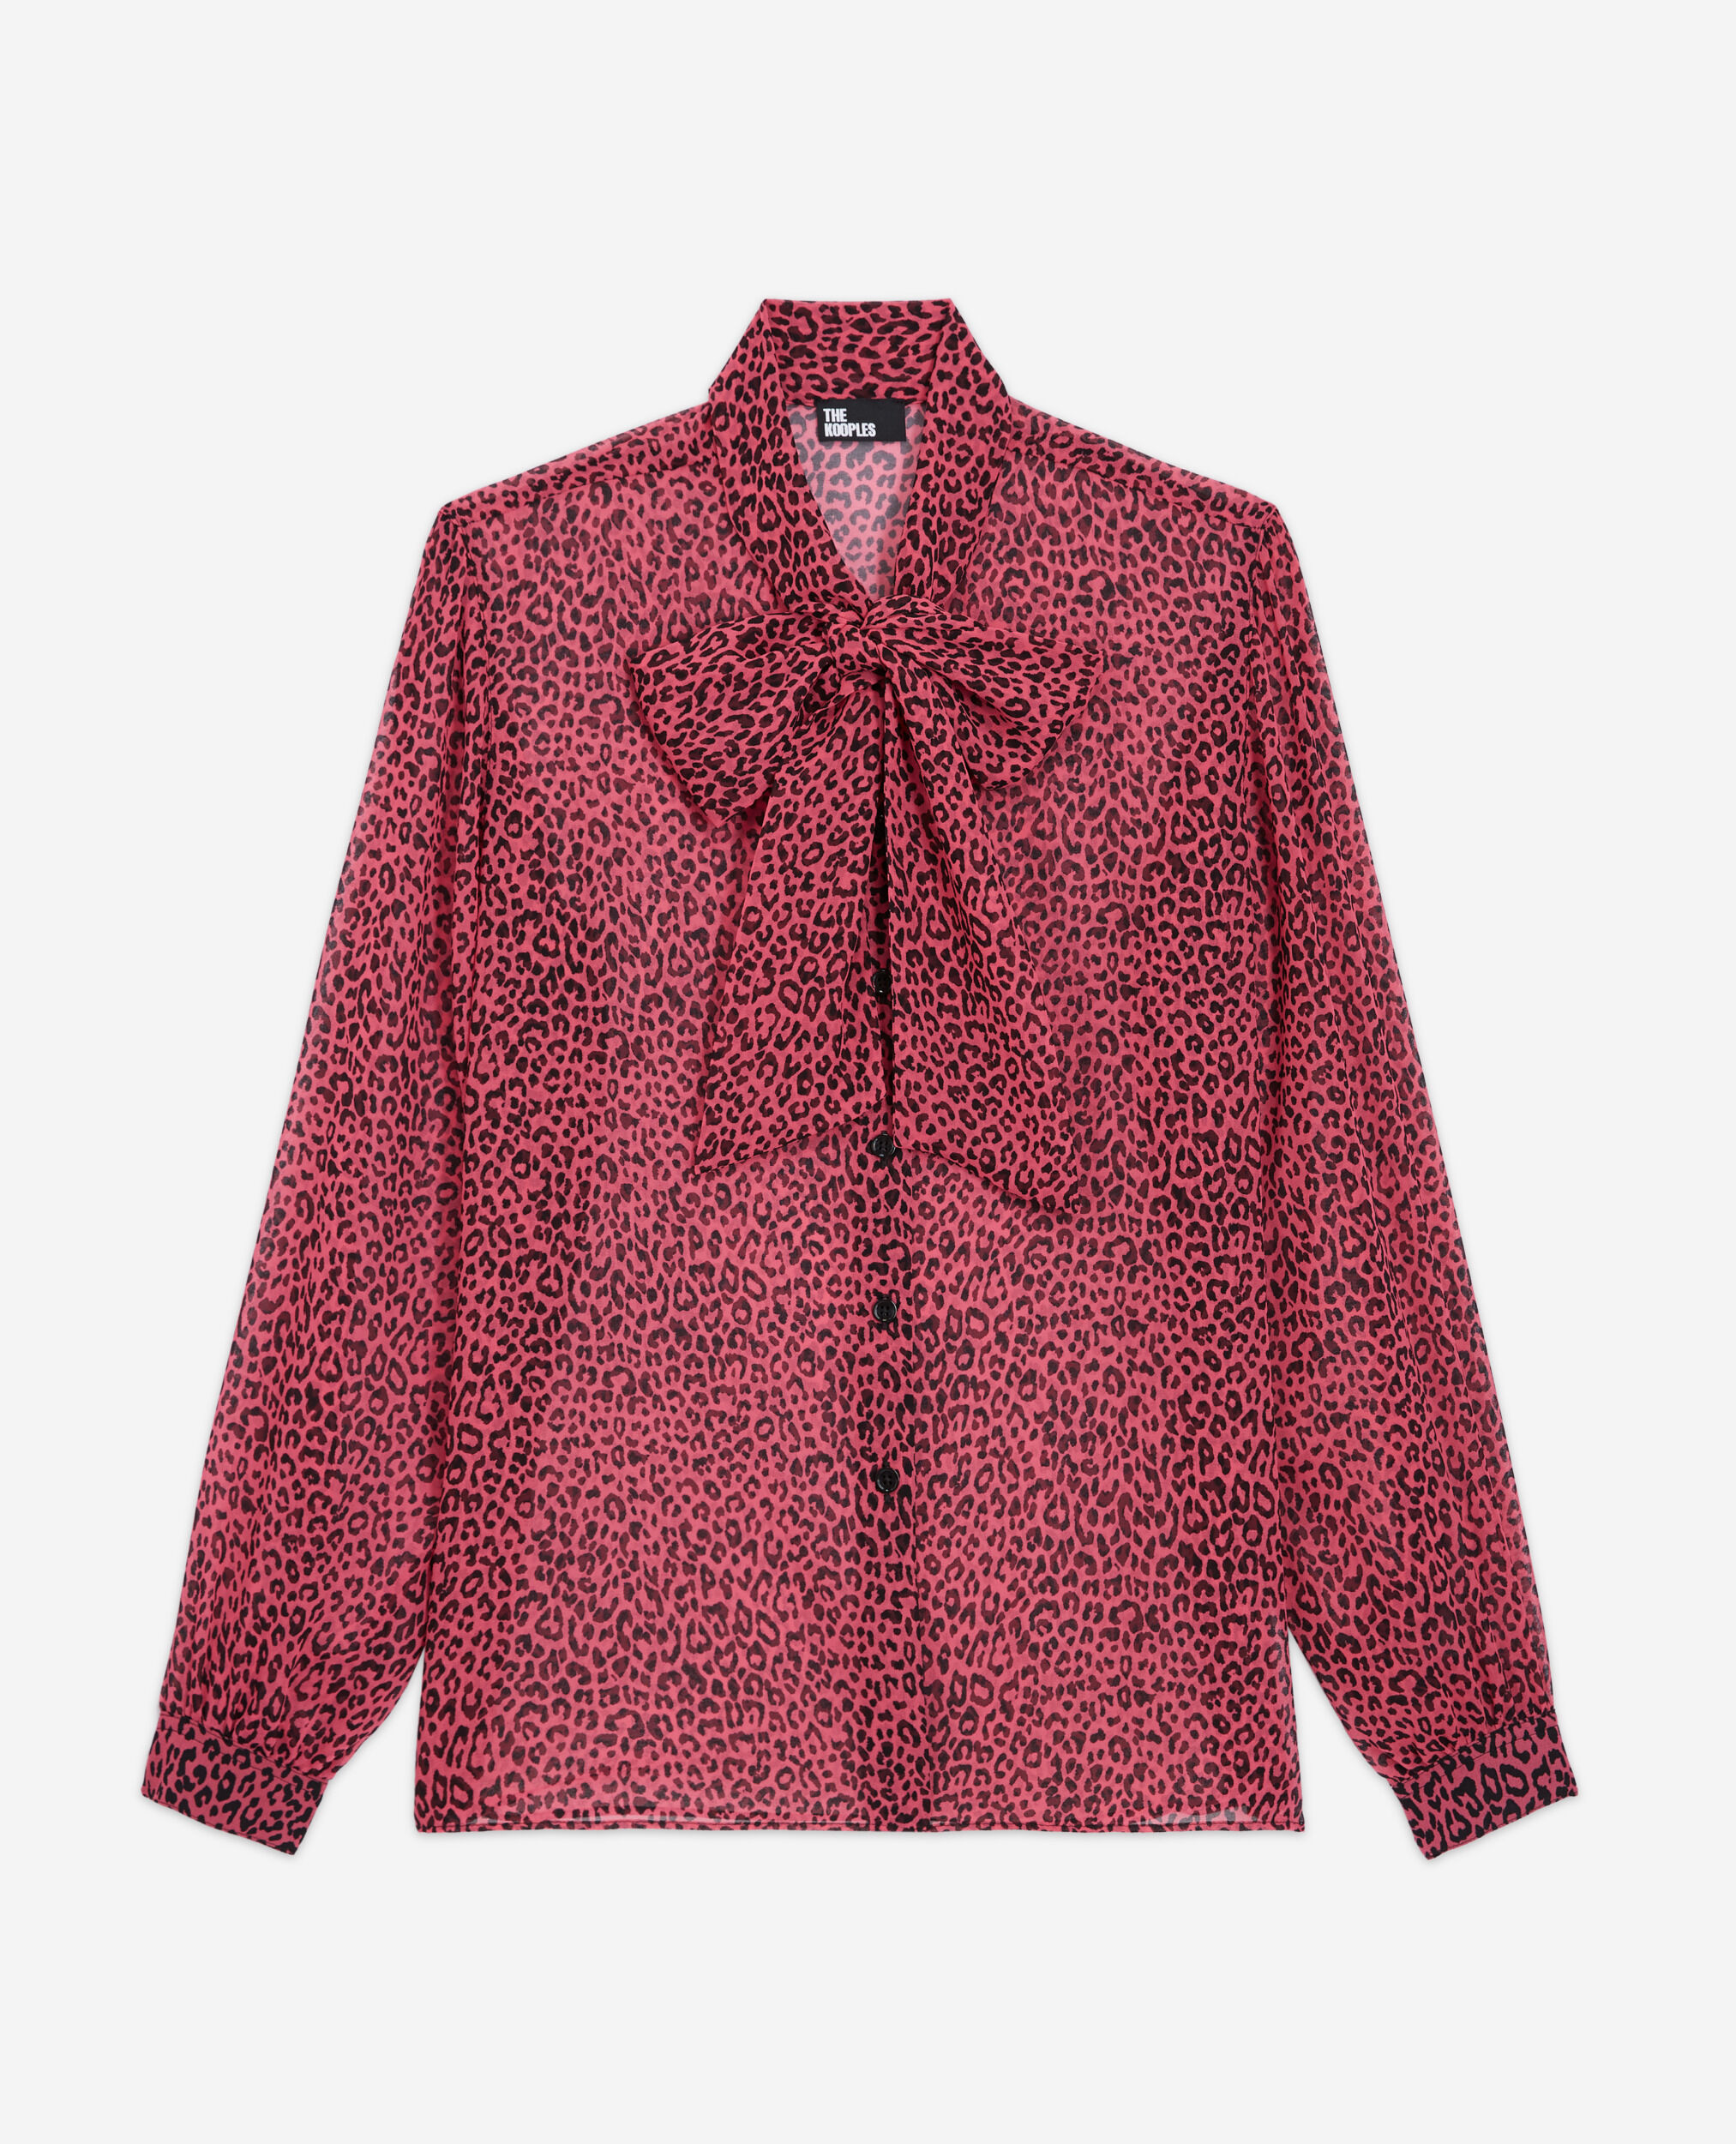 Rosa Leoparden-Hemd, PINK BLACK, hi-res image number null